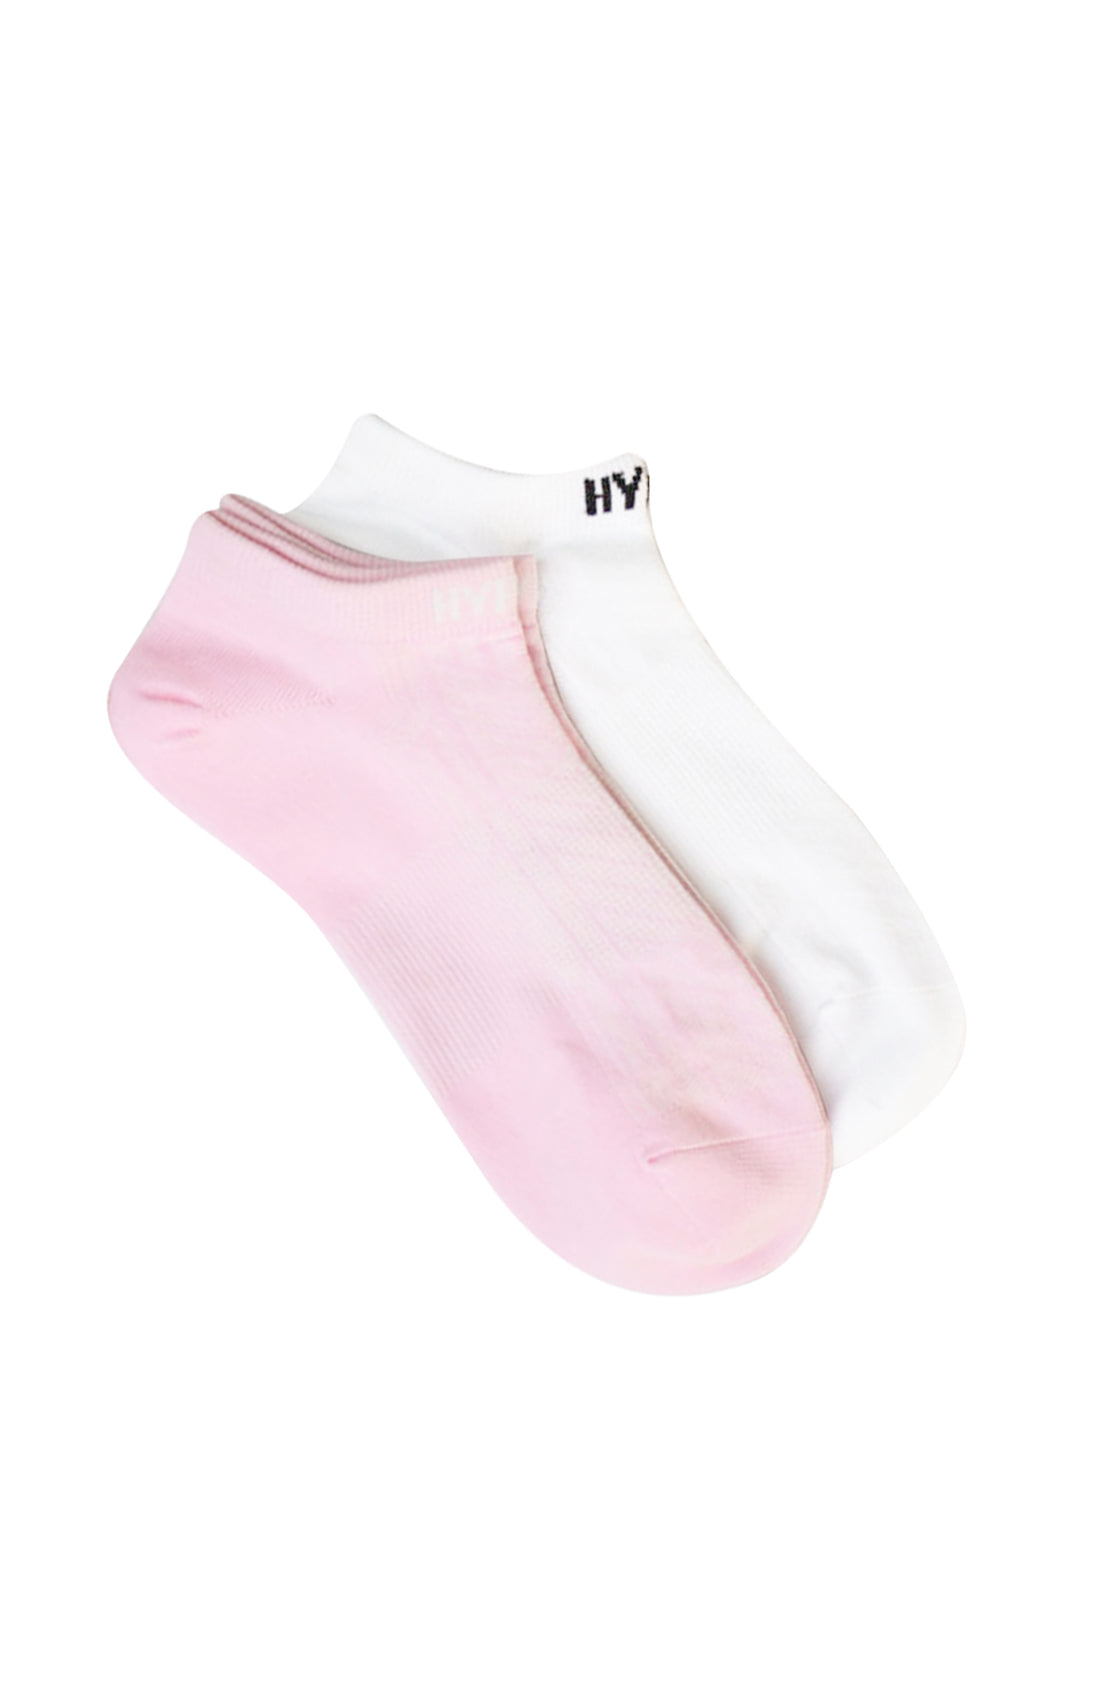 Women's Airlight Socks (2 Pack)